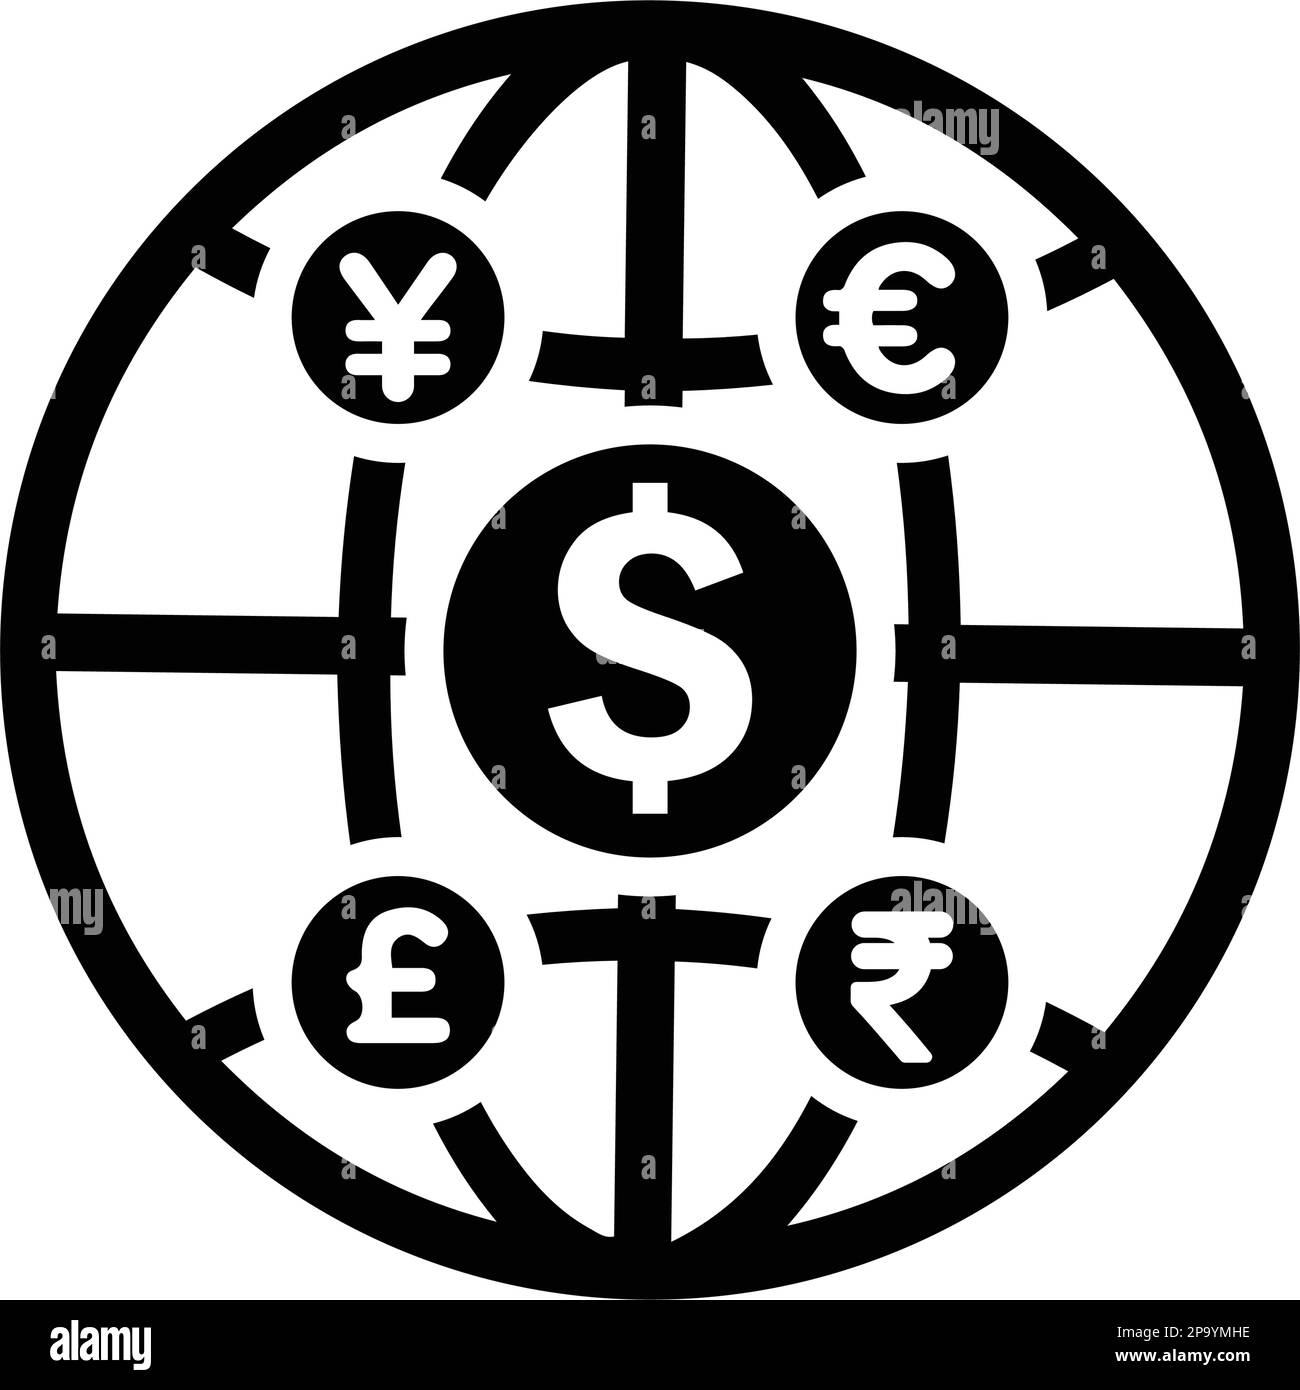 Währung, Finanzen, globale Investitionen, Geld Symbol. Verwendung für kommerzielle, Printmedien, Web oder jede Art von Design-Projekten. Stock Vektor